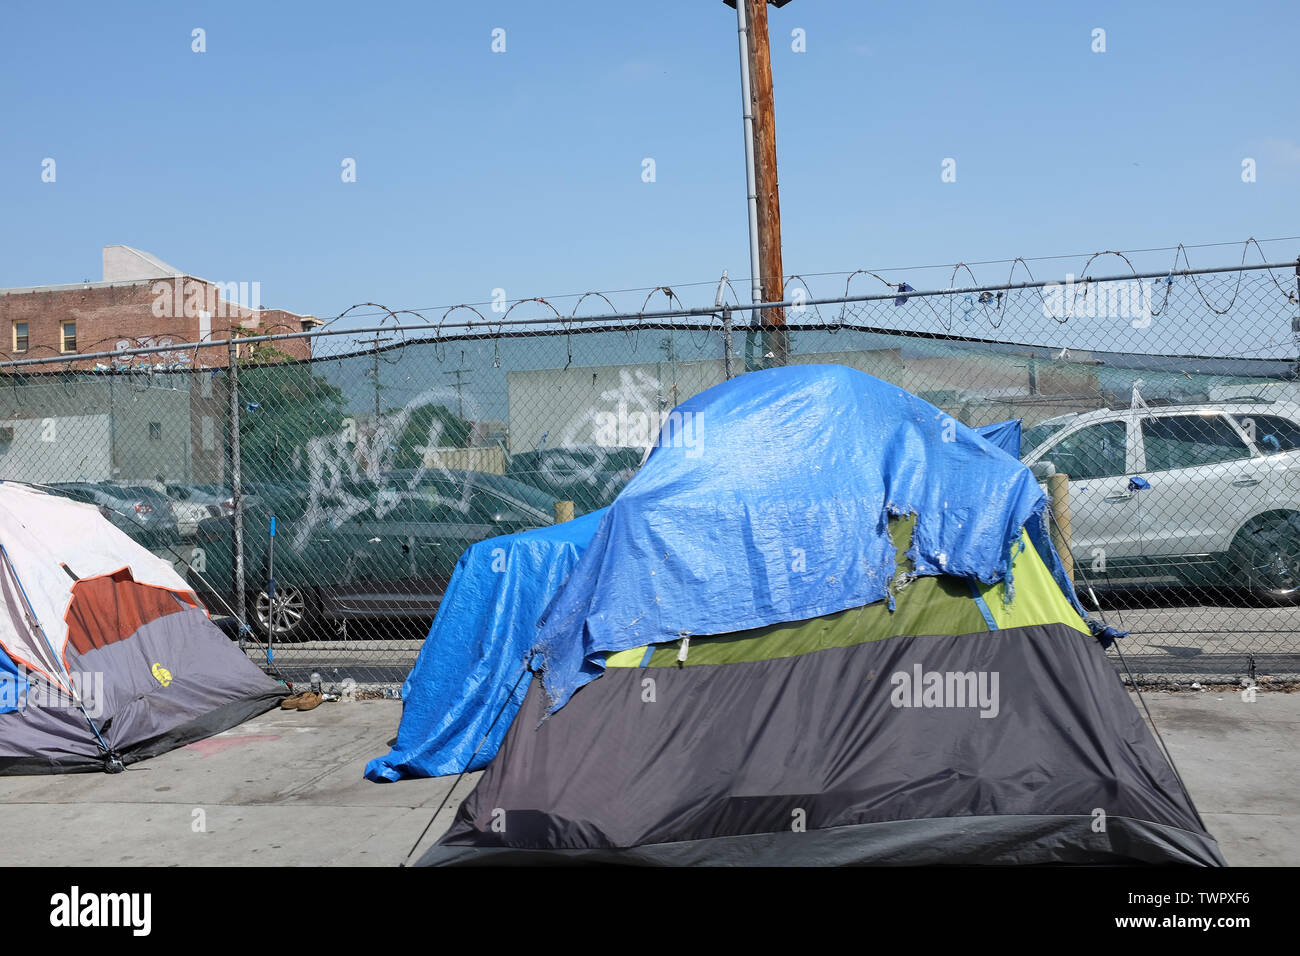 LOS ANGELES - Kalifornien: 18. JUNI 2019: Zelte von Obdachlosen auf dem Bürgersteig in der Skid Row Gebiet von Los Angeles. Stockfoto